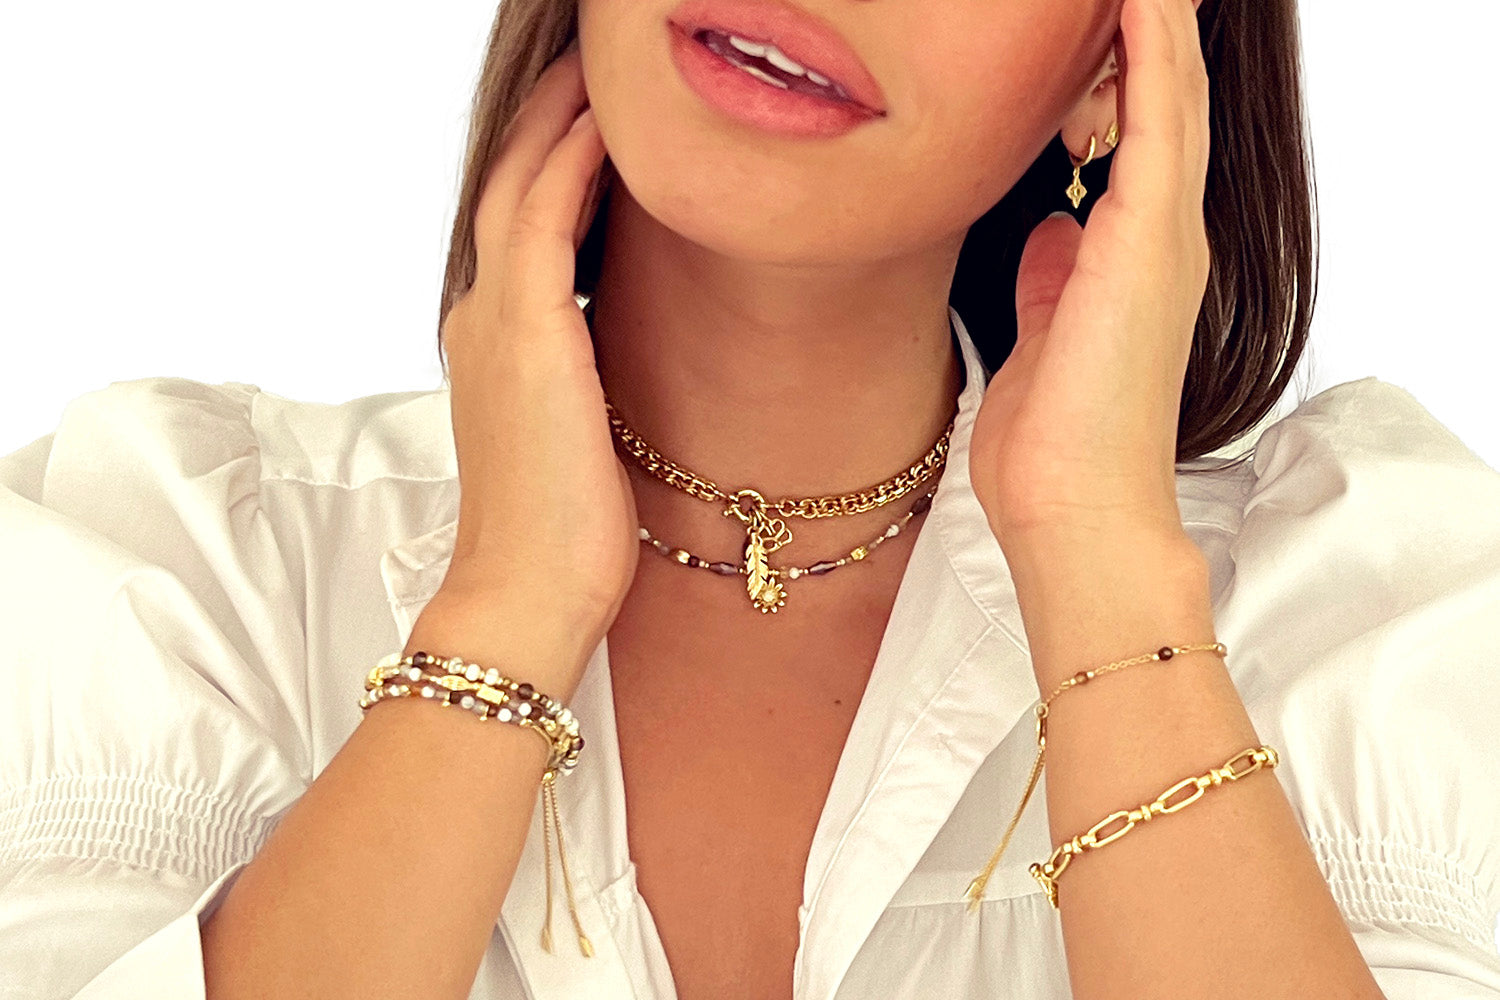 Ishtar Chunky Gold Charm Necklace - Boho Betty